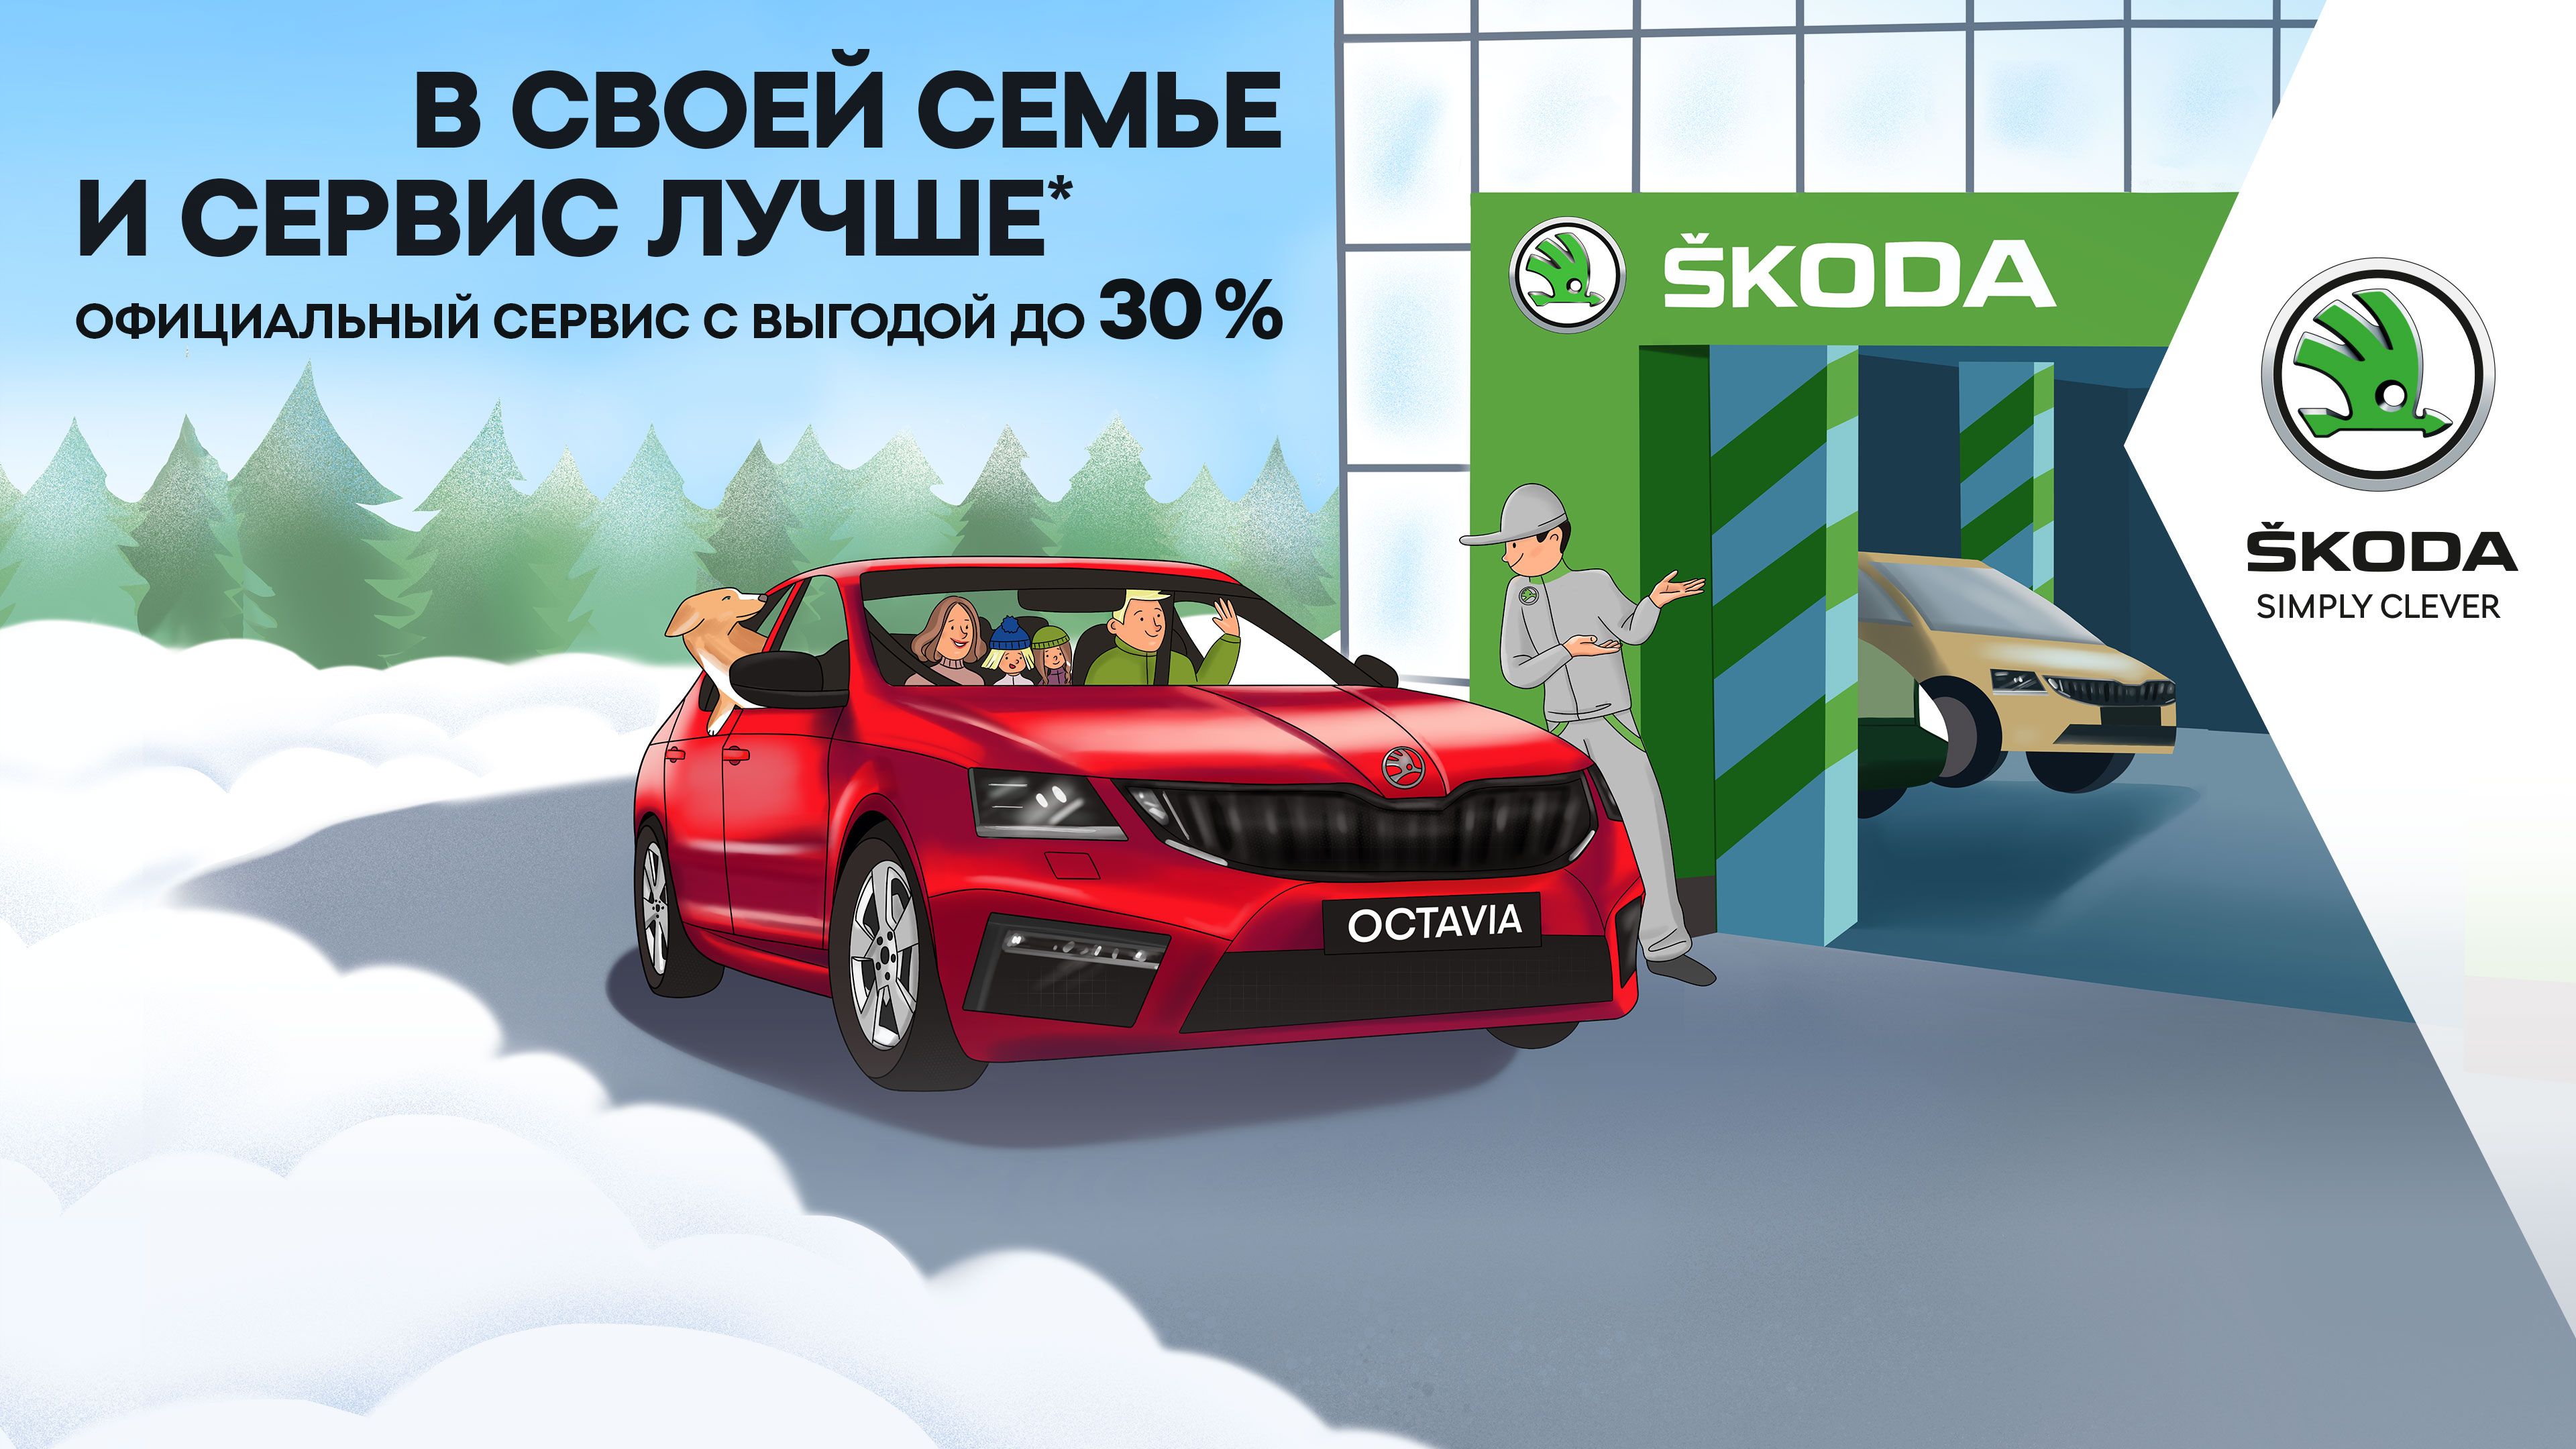 Зимний сервис с выгодой до 30% от ŠKODA